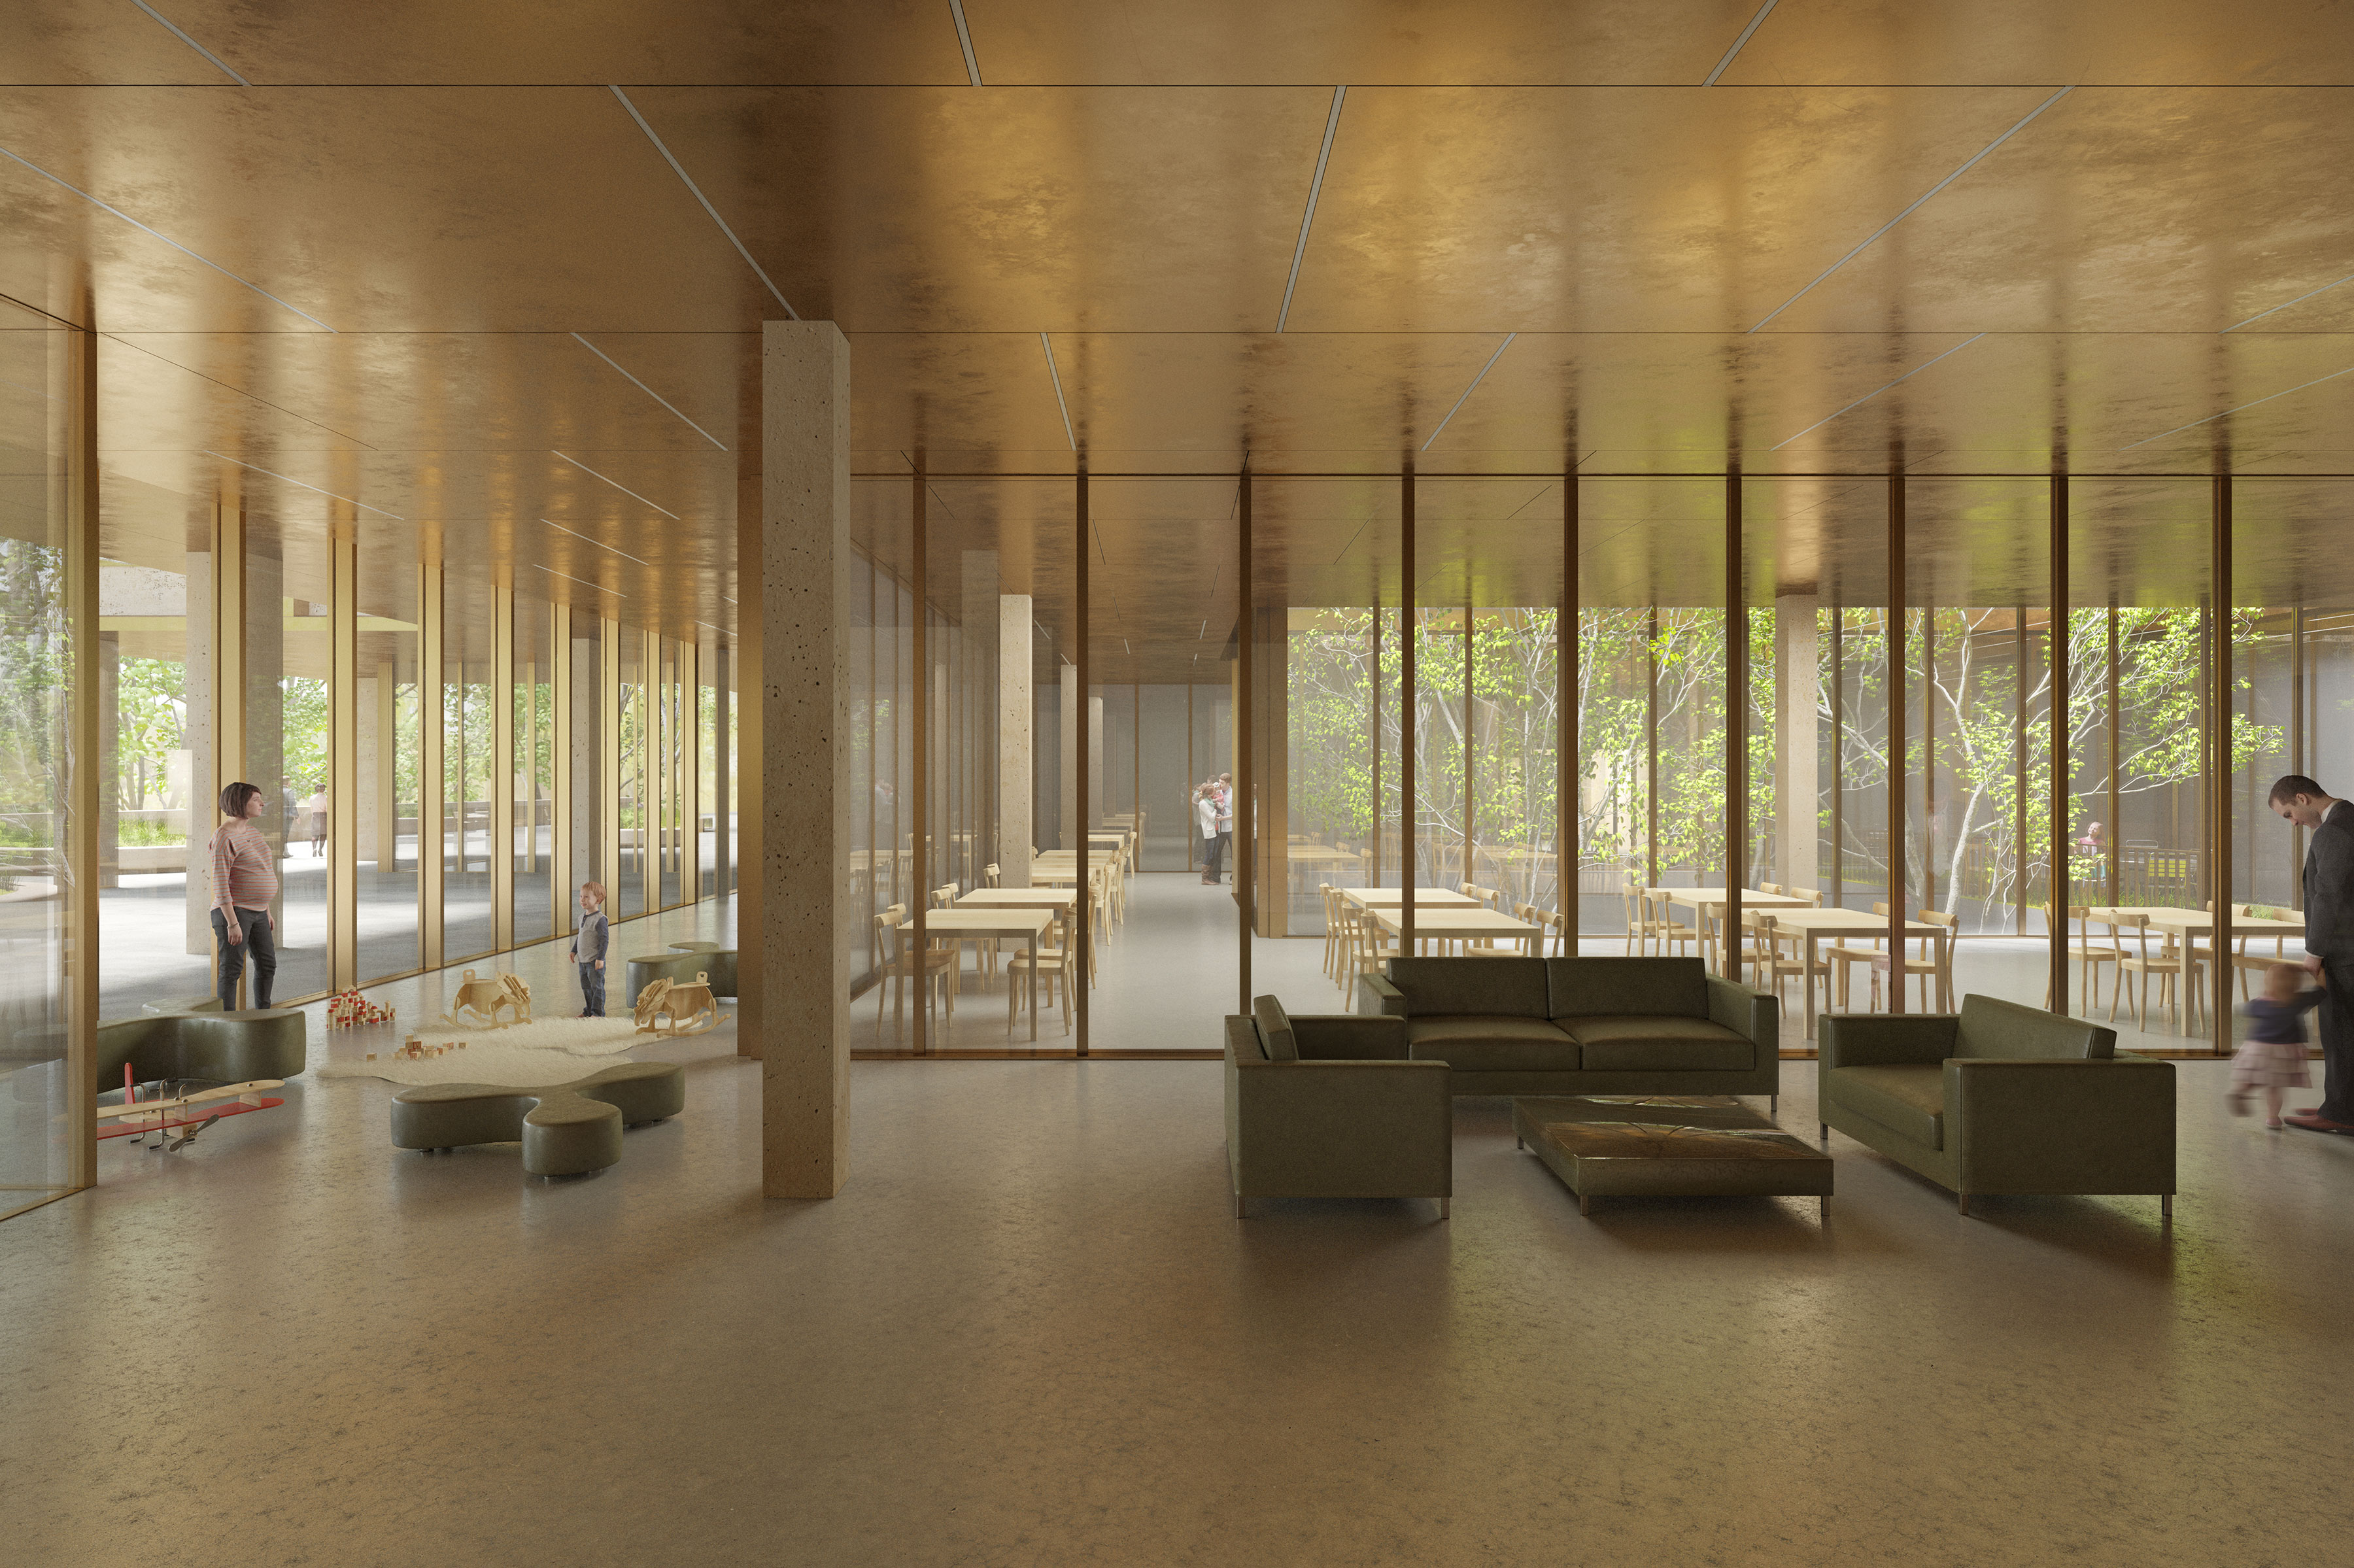 Neubau Kinderspital und Frauenklinik Kantonsspital Luzern | Wettbewerb Marques Architekten 2020 | Visualisierung Dario Lanfranconi